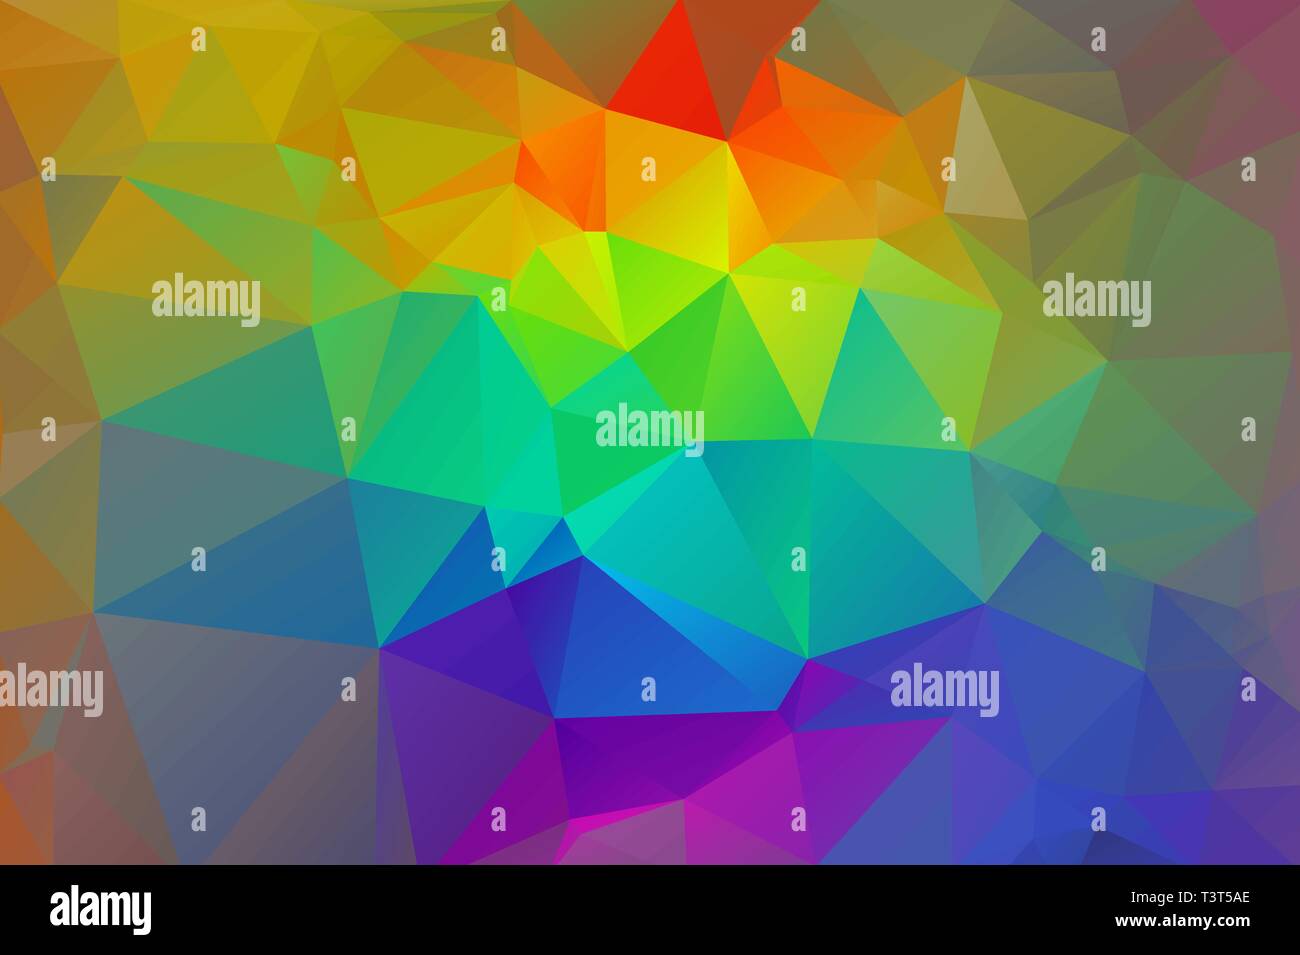 Bunte Regenbogen abstrakt Hintergrund der Dreiecke. Stock Vektor